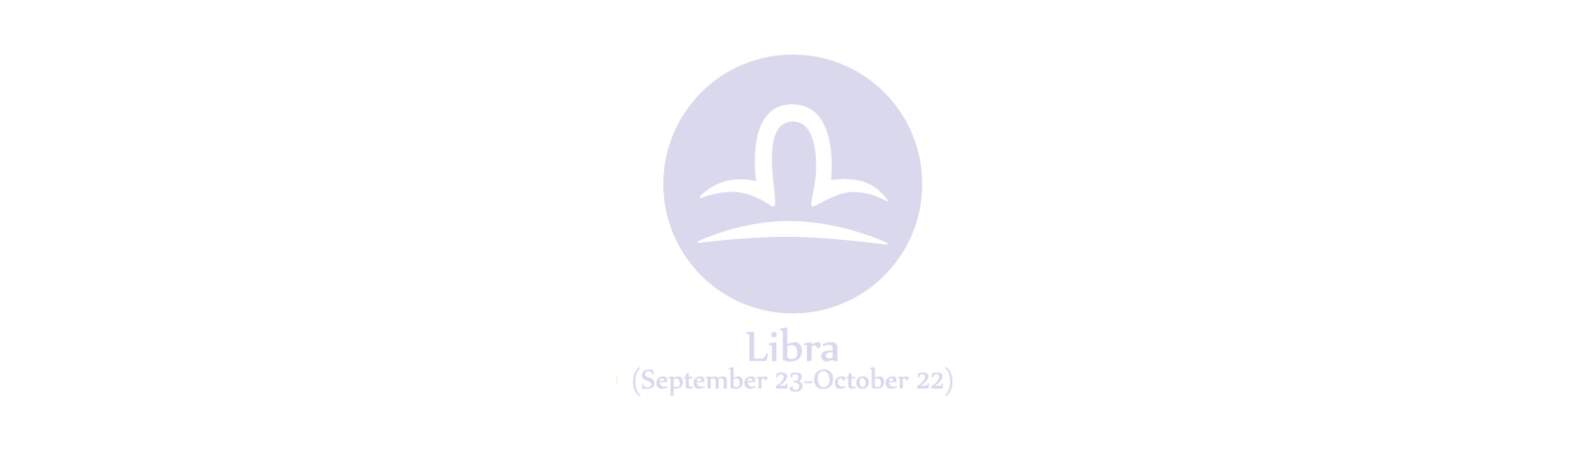 Horoscope de la semaine prochaine pour la Balance